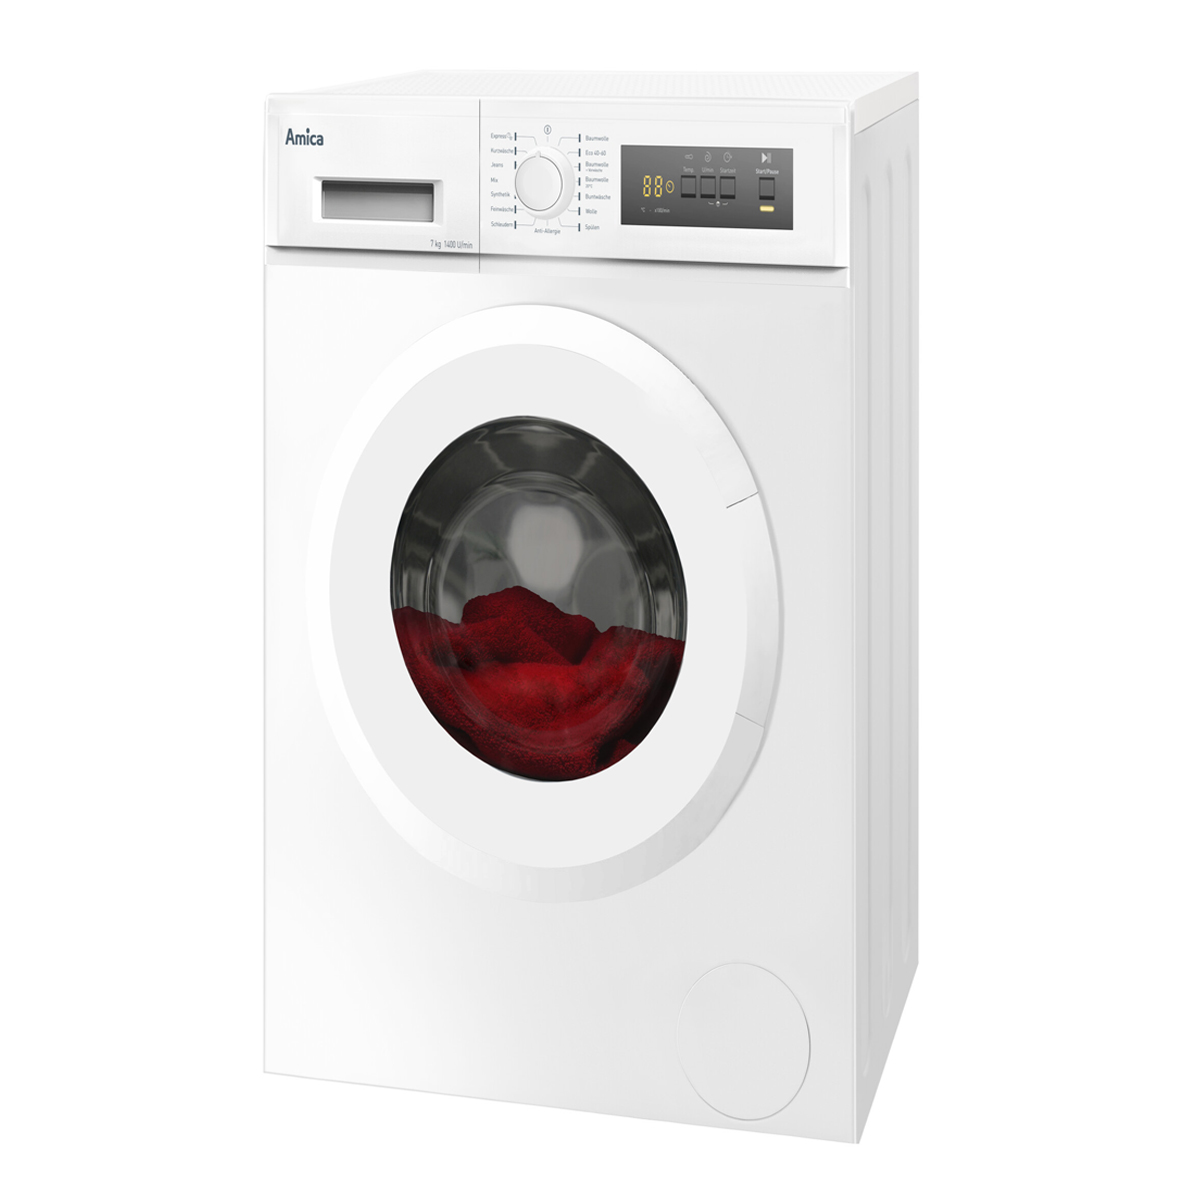 D) Stopp U/Min Aqua 1400 7kg Waschmaschine Waschmaschine AMICA Weiß Startzeitvorwahl Frontlader kg, (7